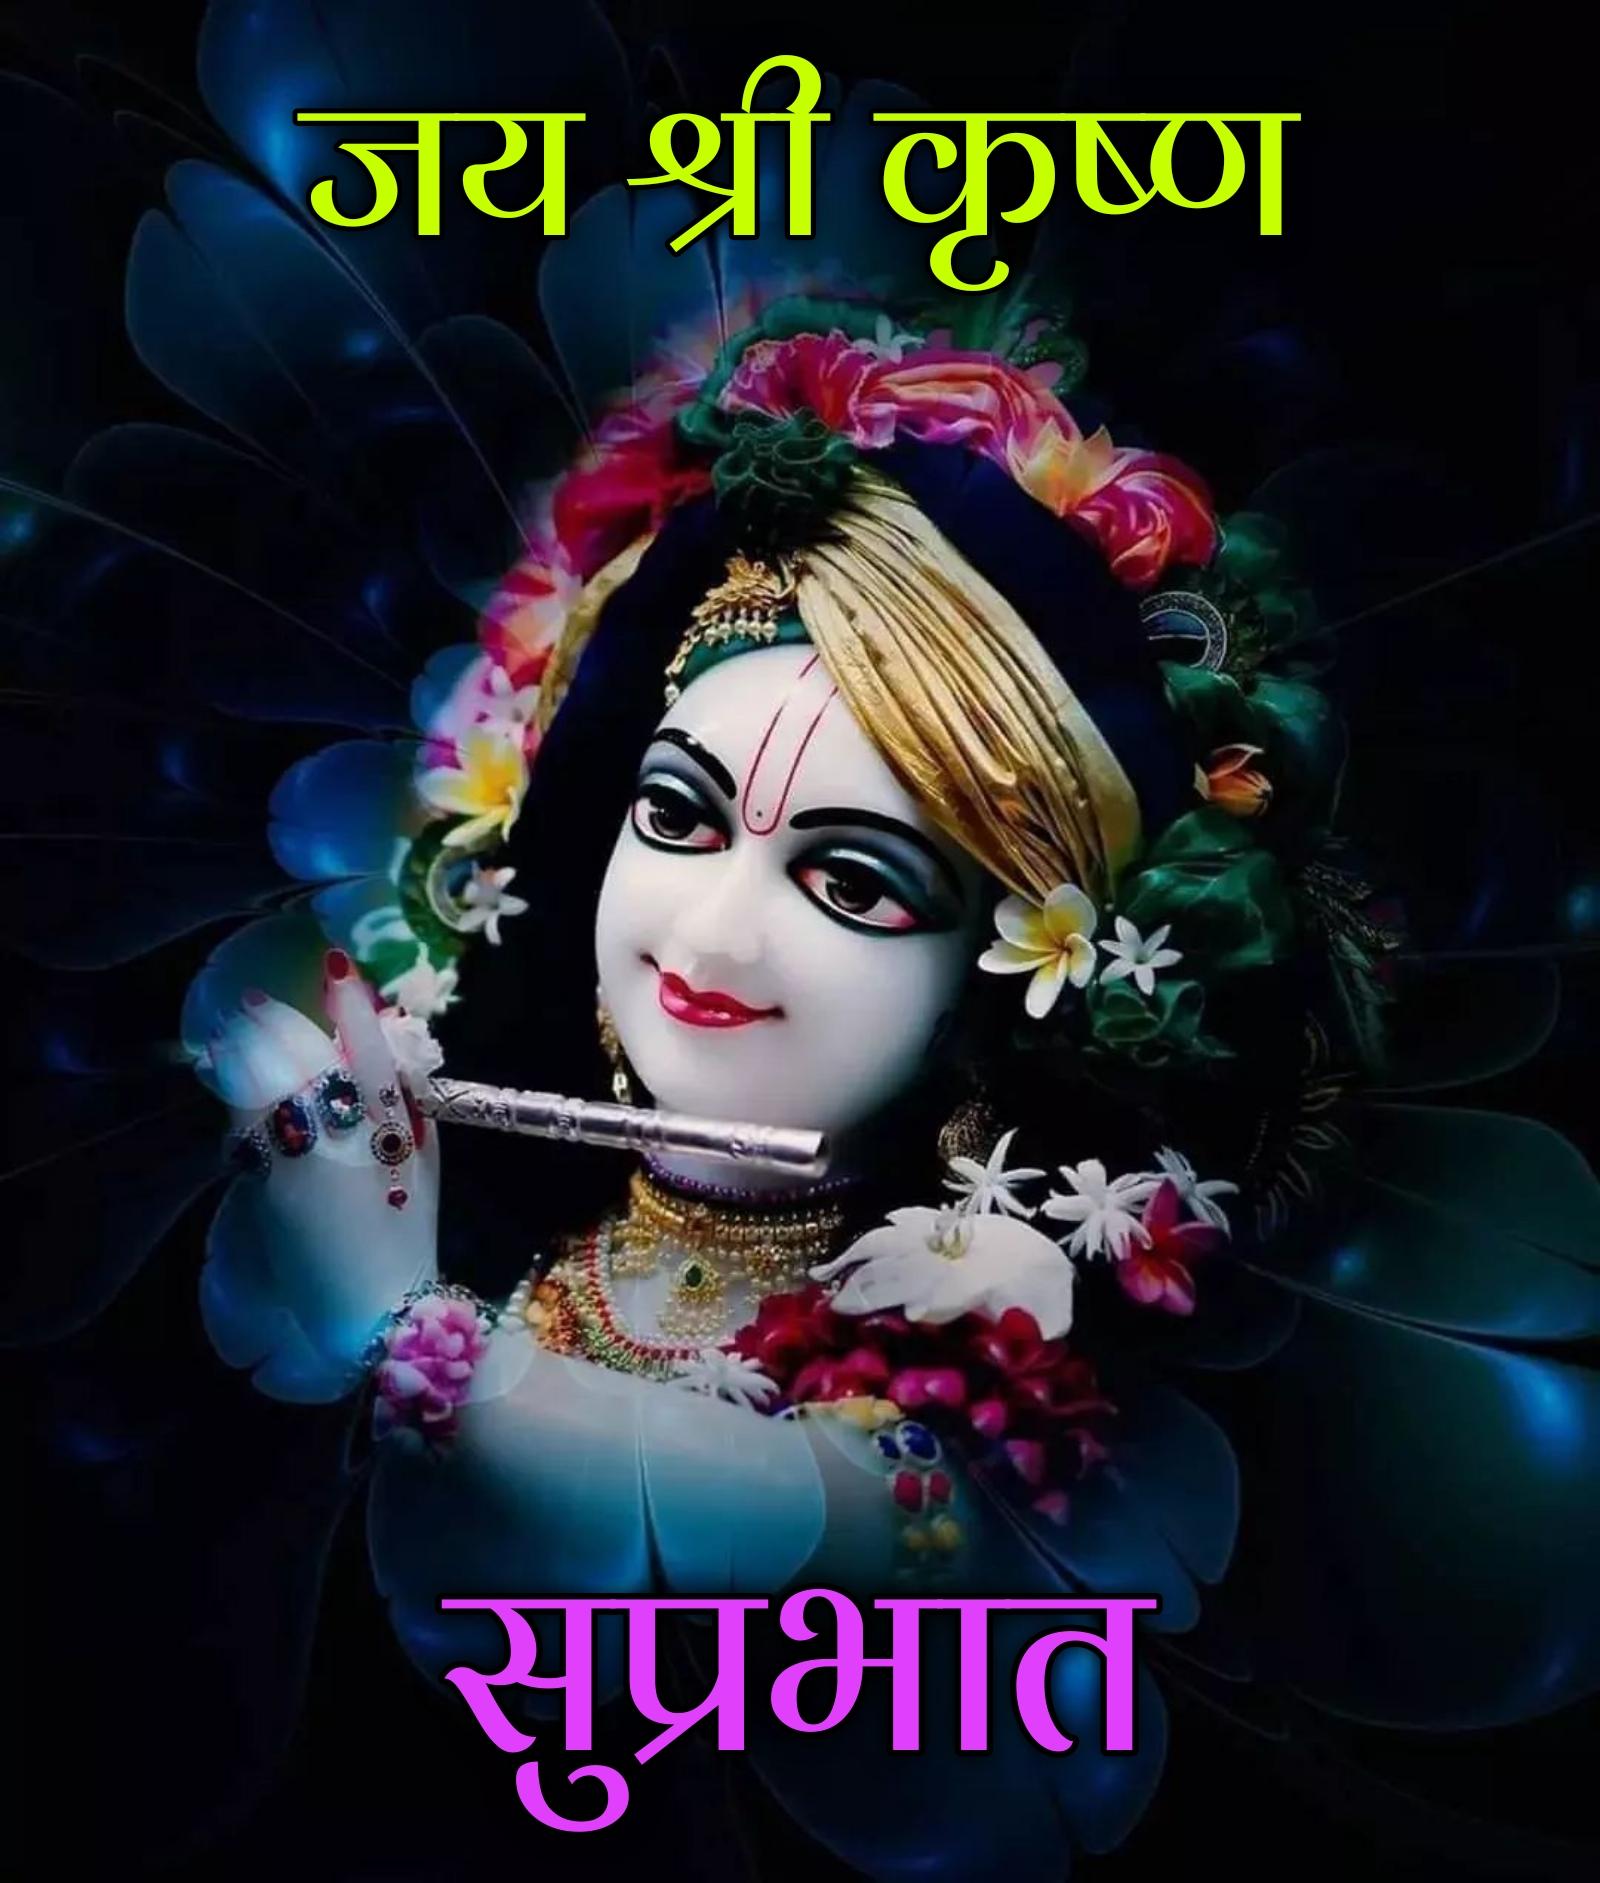 Jai Shri Krishna Good Morning Images - ShayariMaza